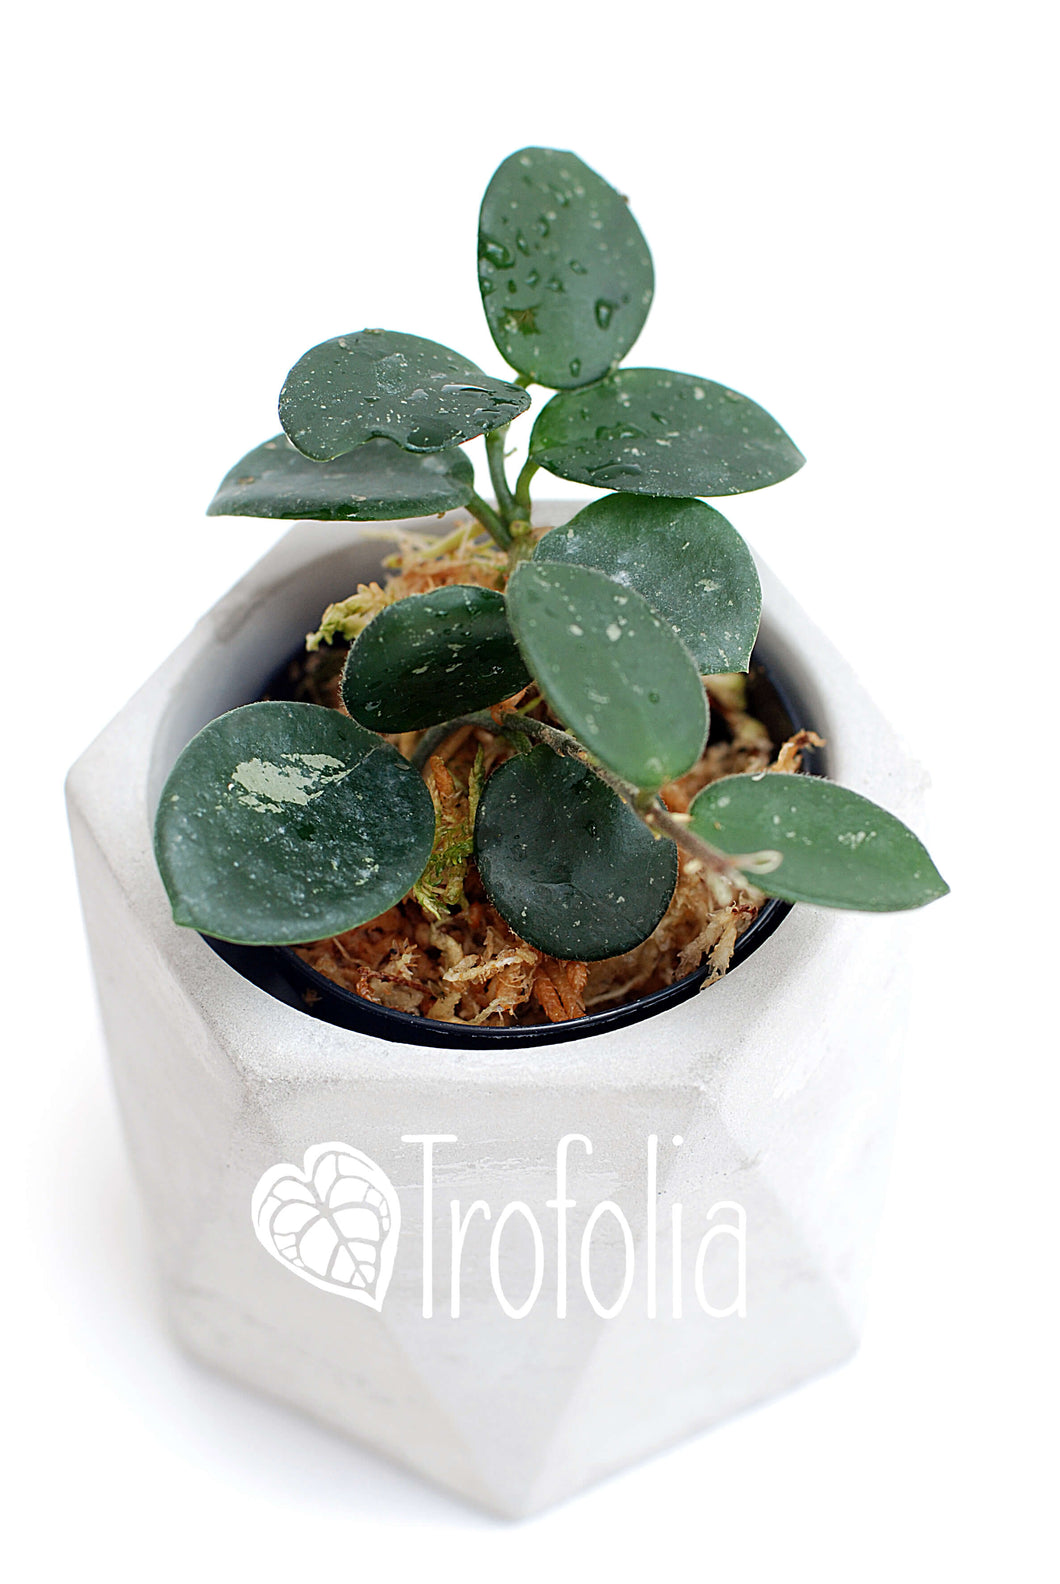 Hoya Mathilde - Trofolia